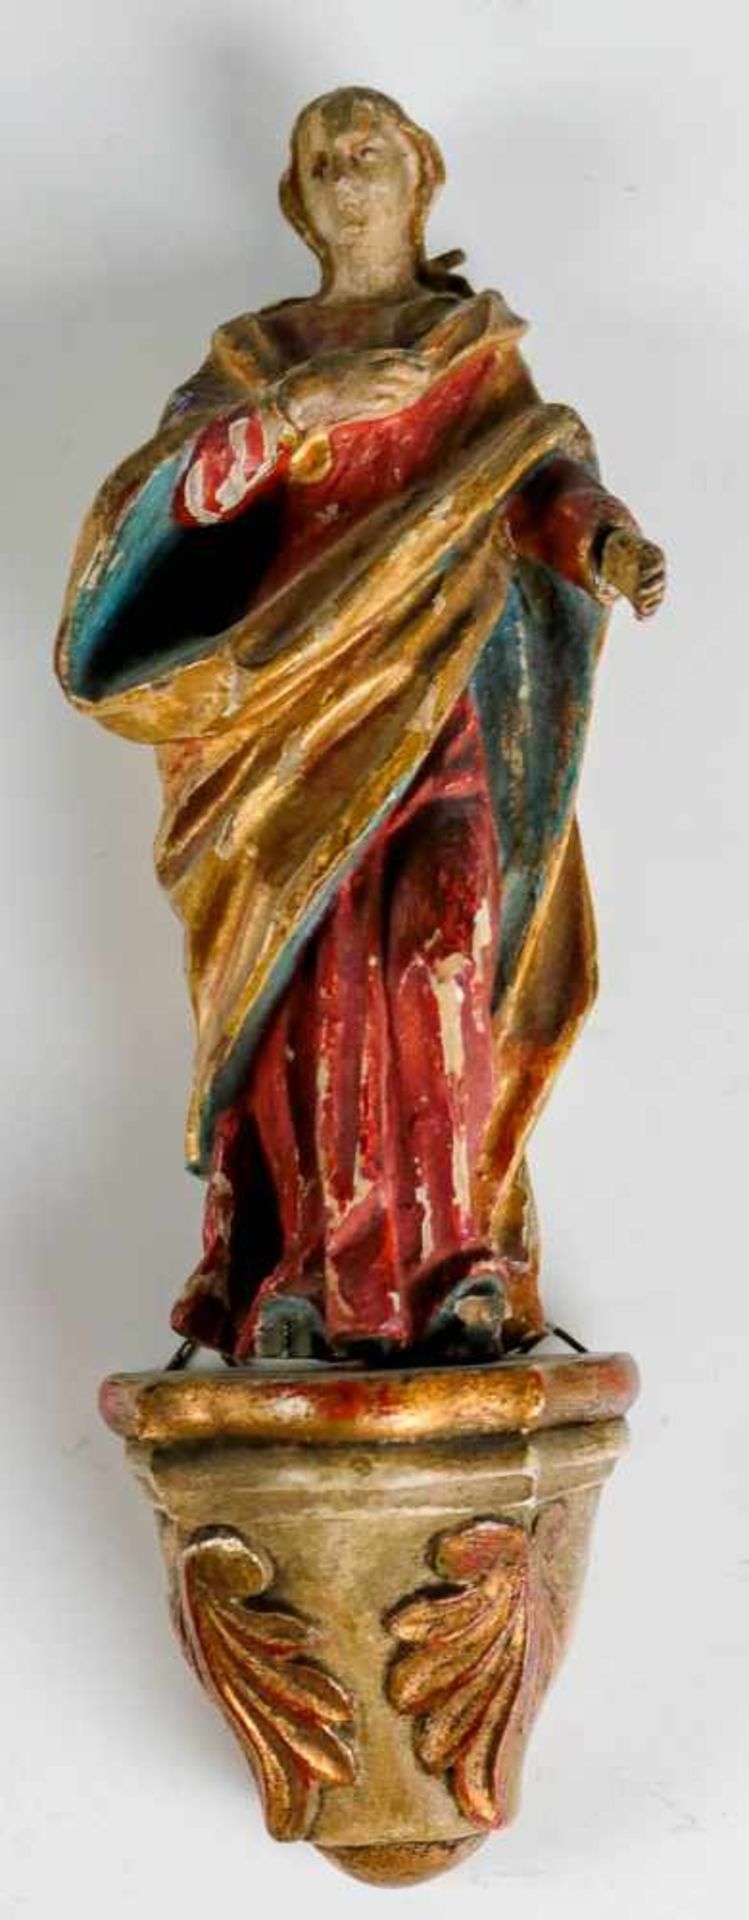 Madonna.Holz, farbig gefasst und vergoldet. Spätere Konsole. (Besch.). H. o. K. 16 cm. Süddeutsch.(